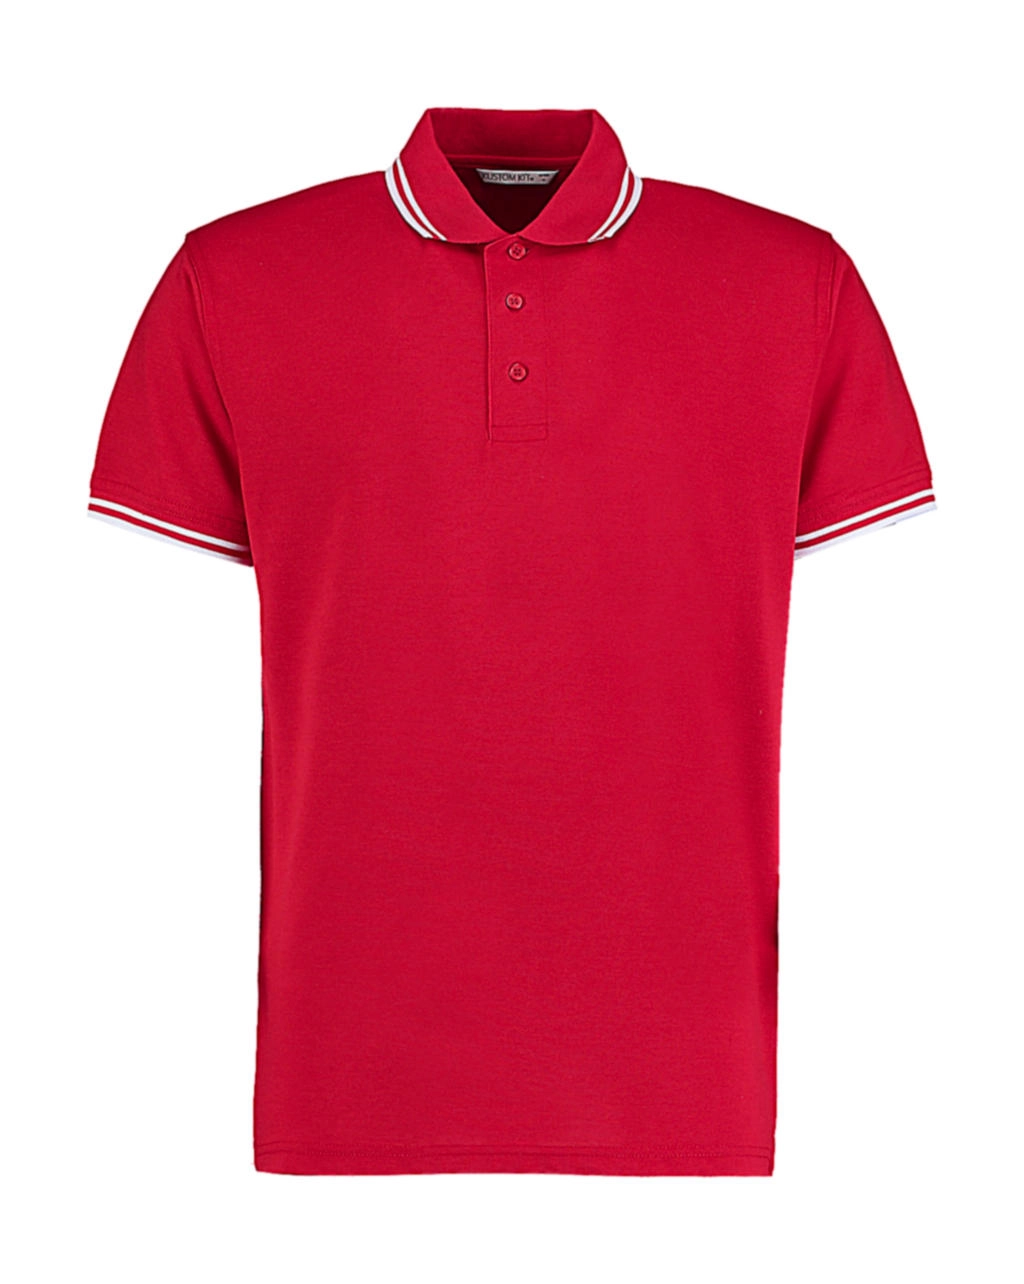 Classic Fit Tipped Collar Polo zum Besticken und Bedrucken in der Farbe Red/White mit Ihren Logo, Schriftzug oder Motiv.